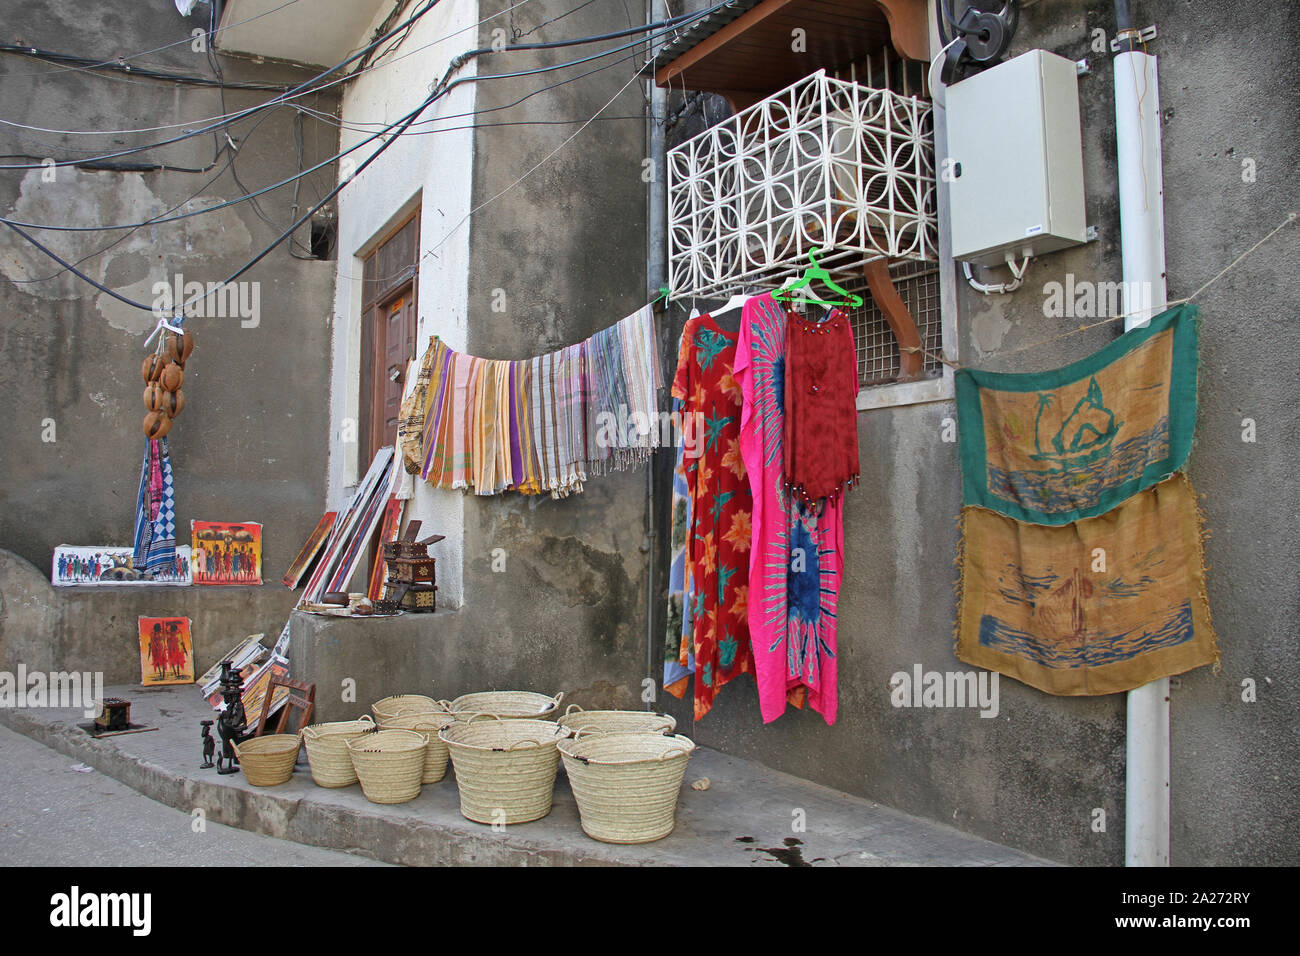 Des peintures, des instruments de percussion en claquettes, des paniers et divers vêtements étaient vendus à l'extérieur d'une maison à Stone Town, Zanzibar, Tanzanie, l'île d'Unguja. Banque D'Images